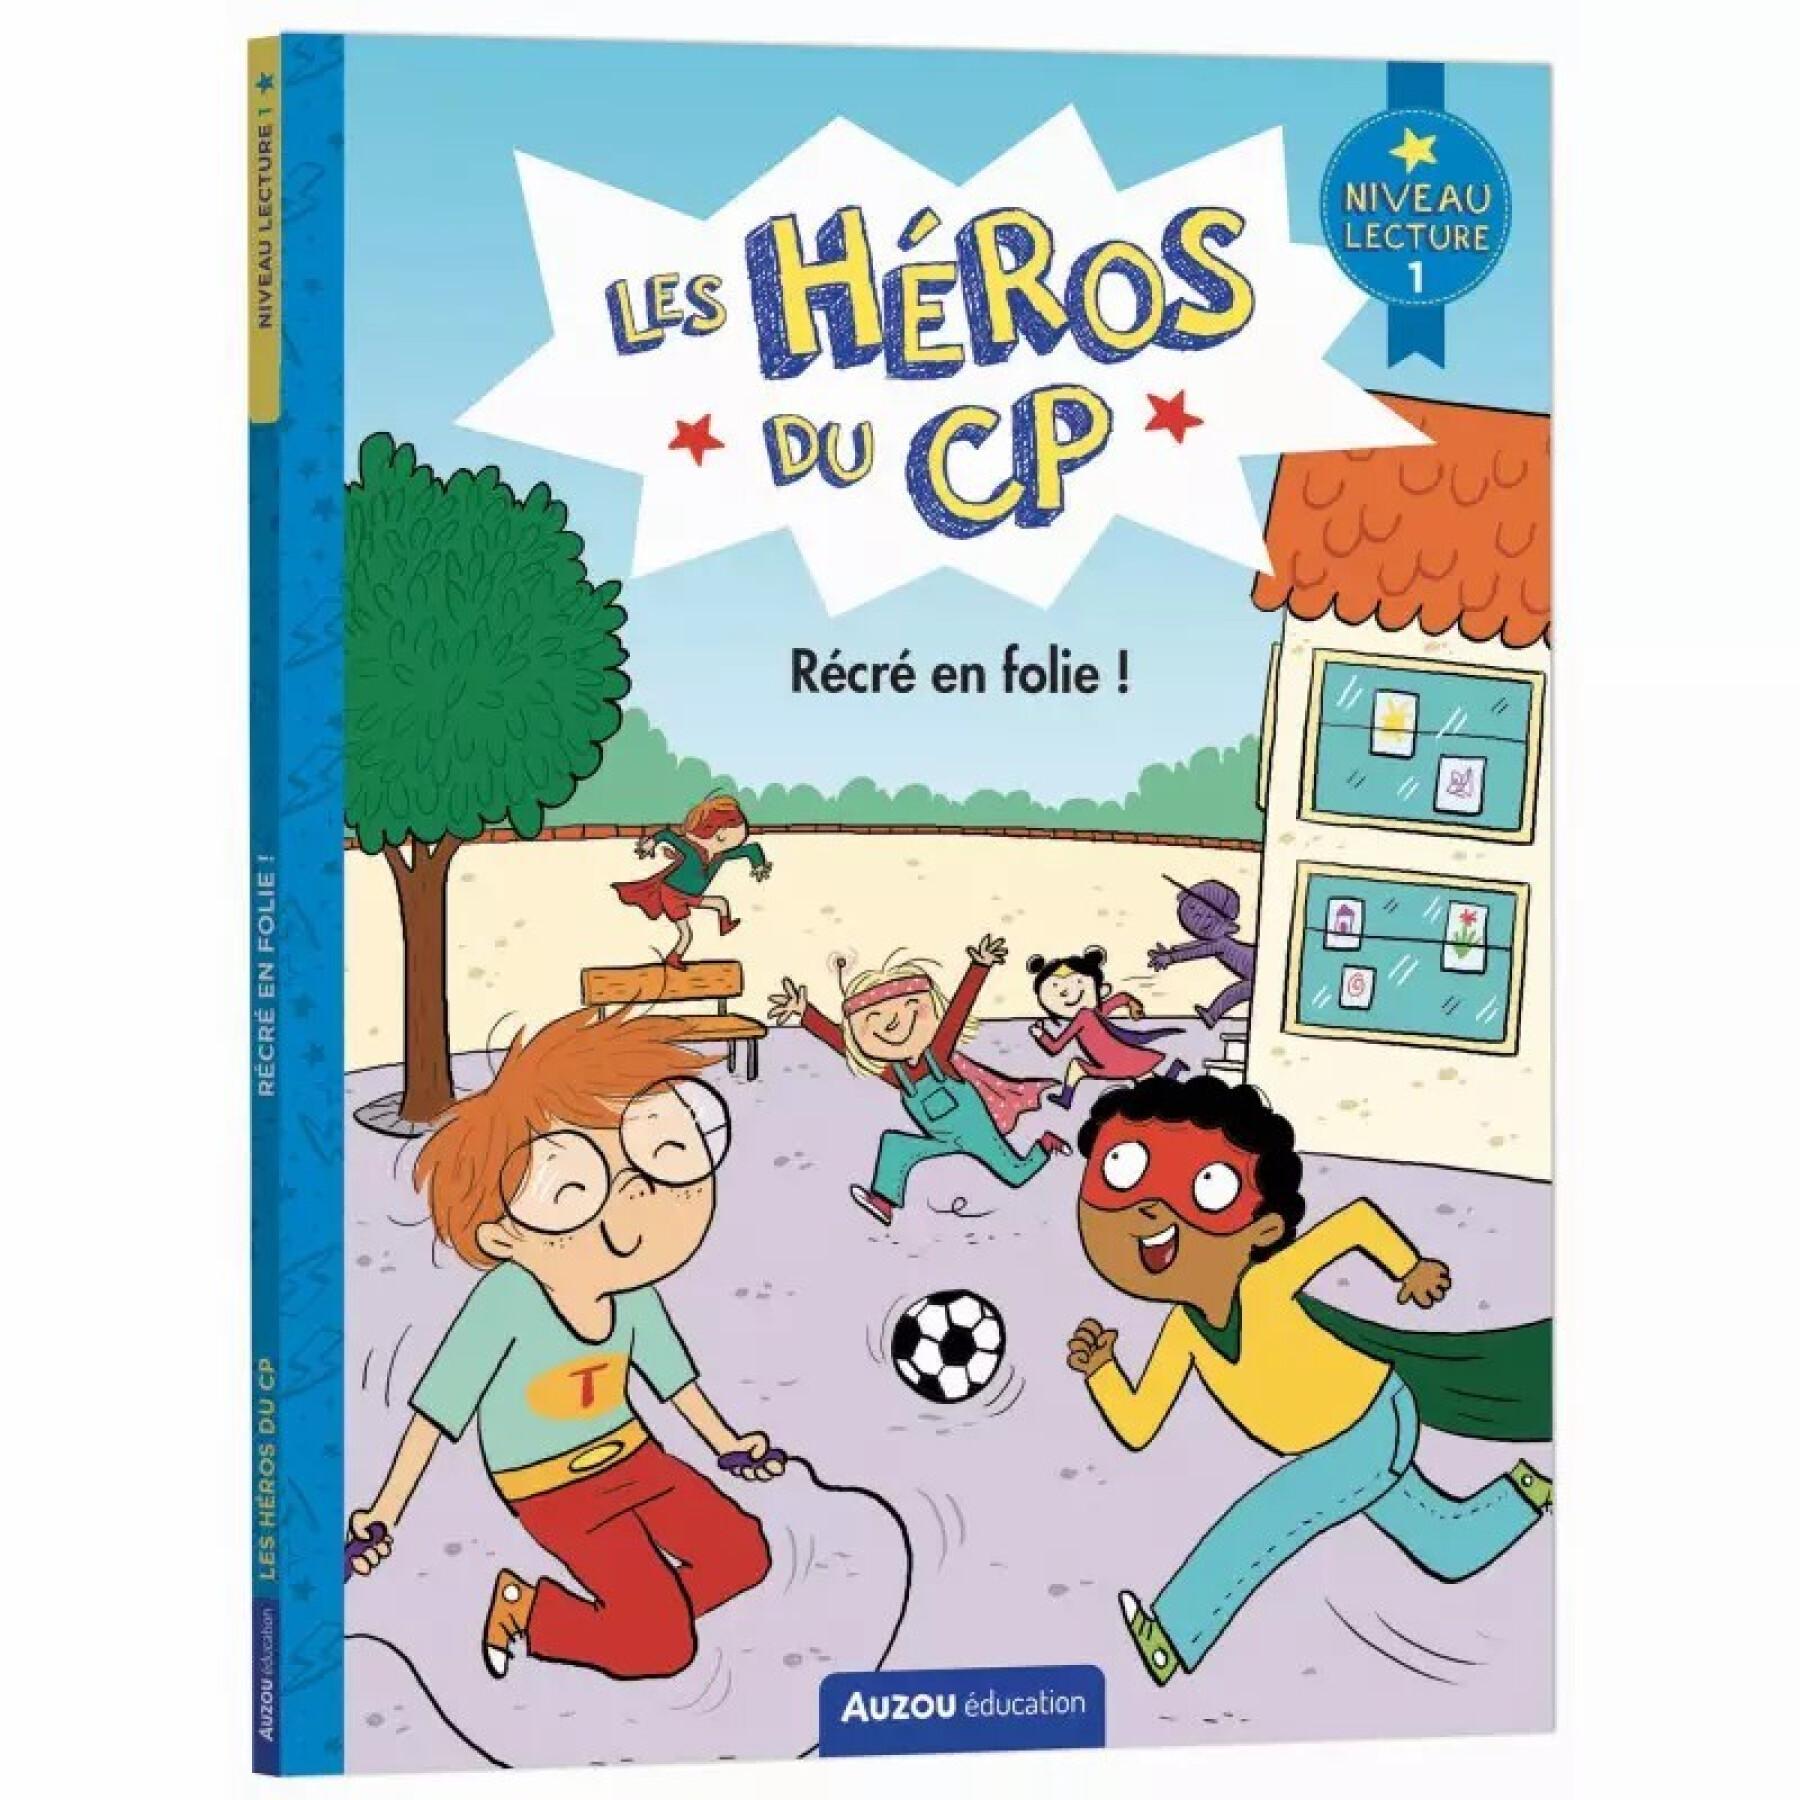 Libro per eroi per bambini livello 1 récré en folie Auzou